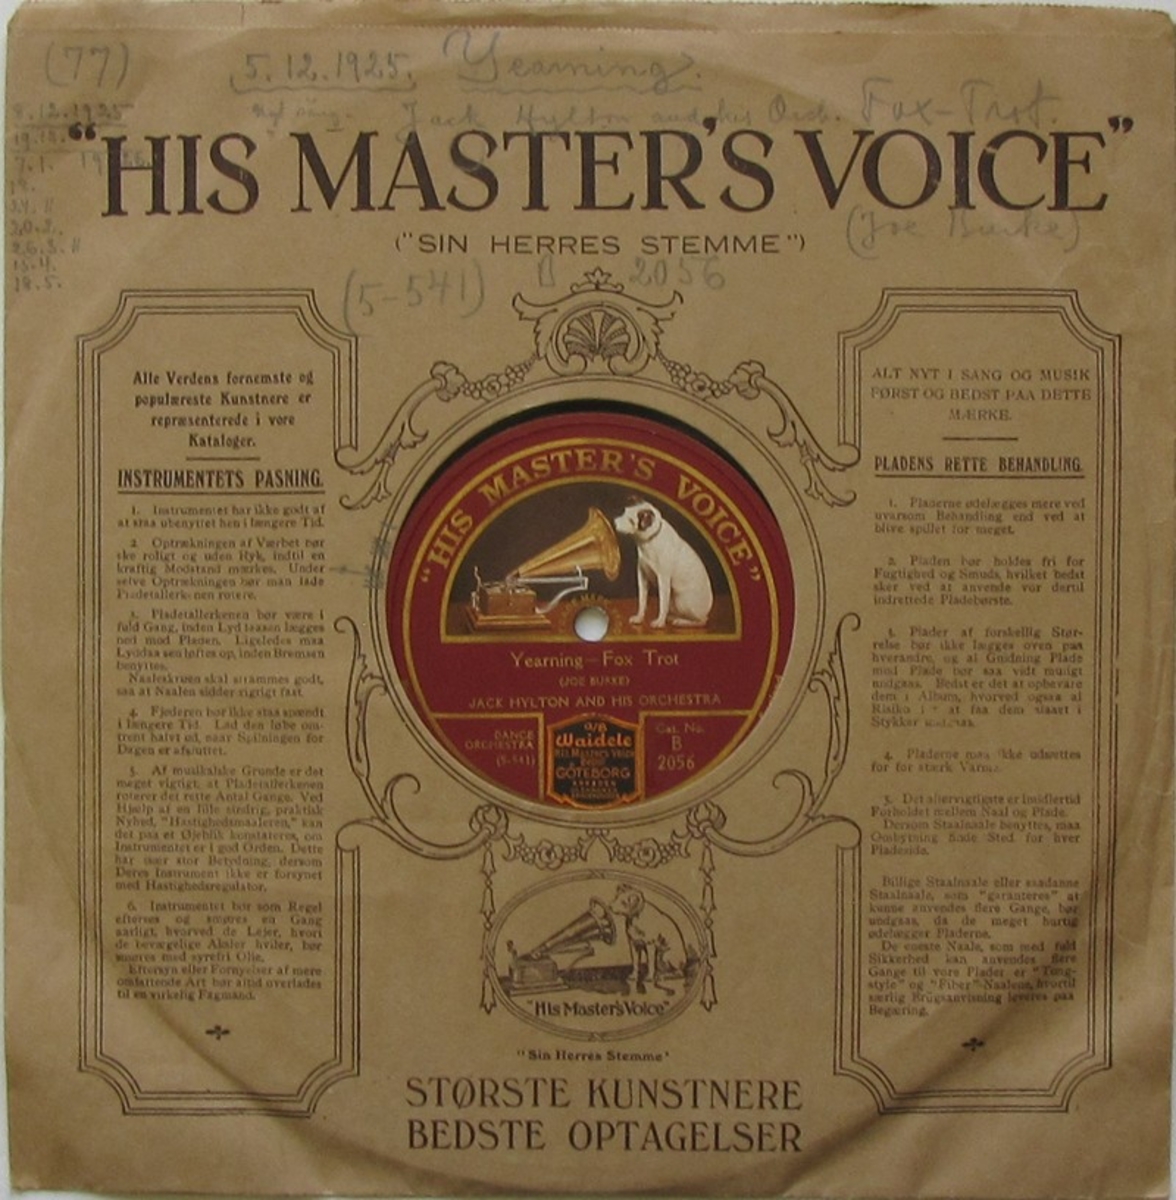 Vinylskiva av märket His Master's Voice